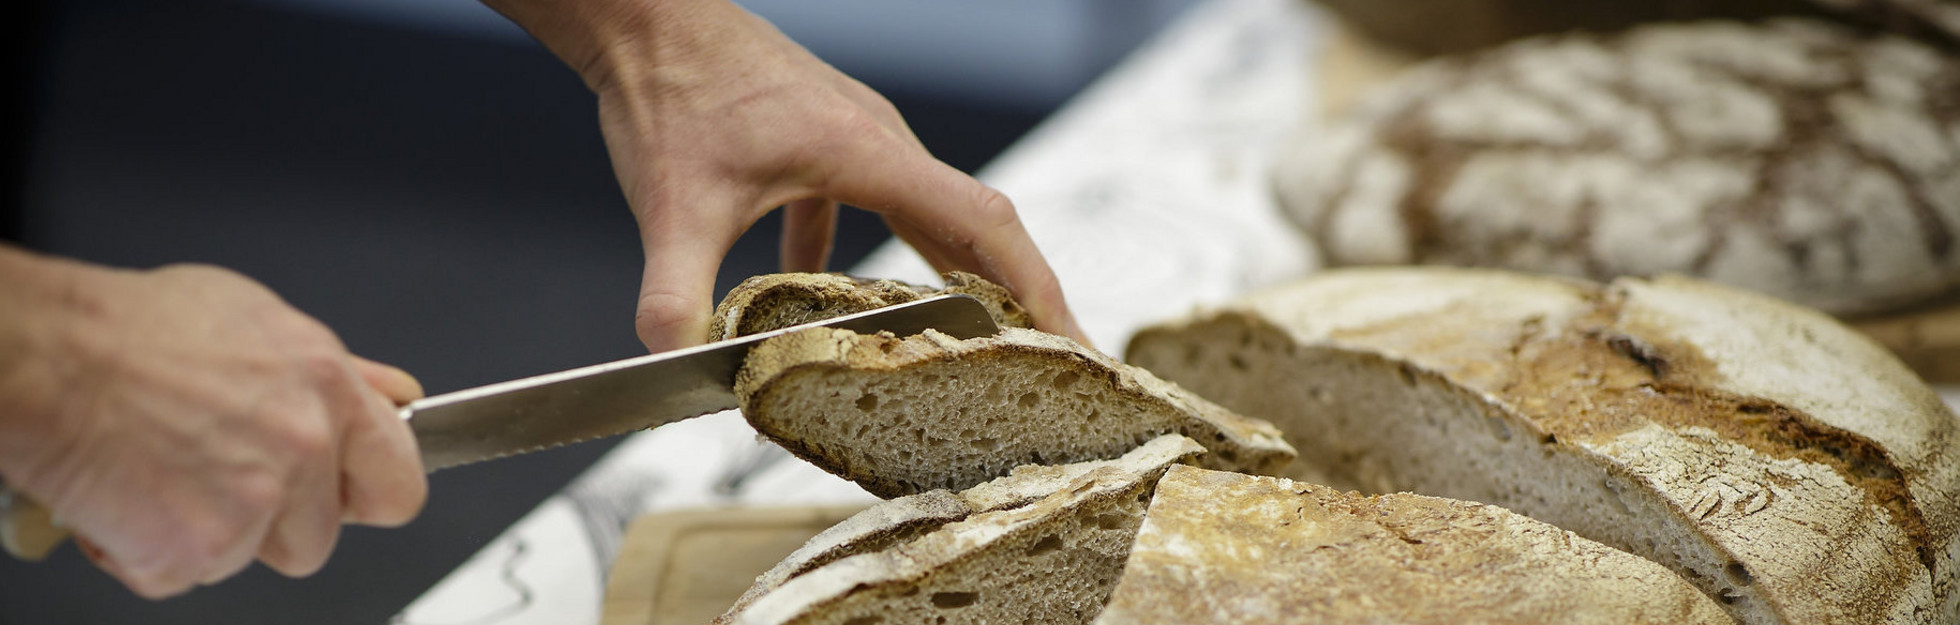 Brot wird in Scheiben geschnitten im Rahmen einer Ich kann kochen! Veranstaltung.